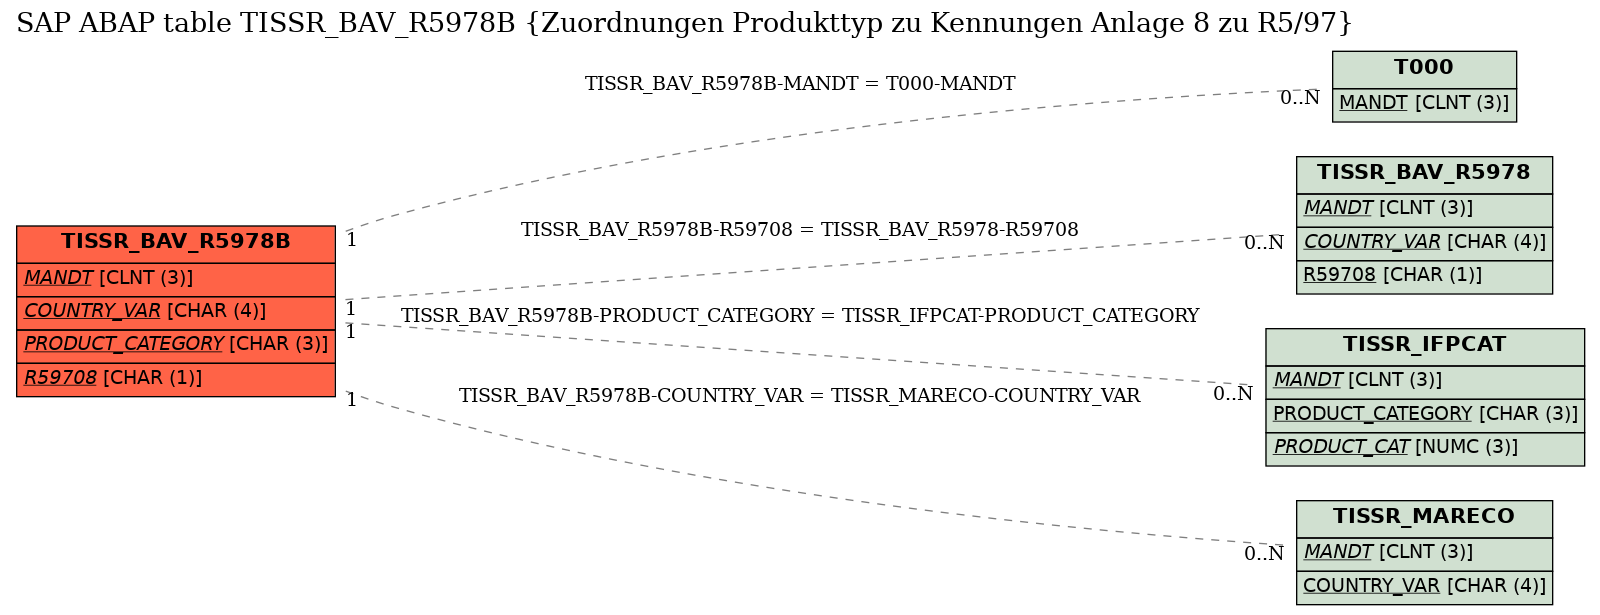 E-R Diagram for table TISSR_BAV_R5978B (Zuordnungen Produkttyp zu Kennungen Anlage 8 zu R5/97)